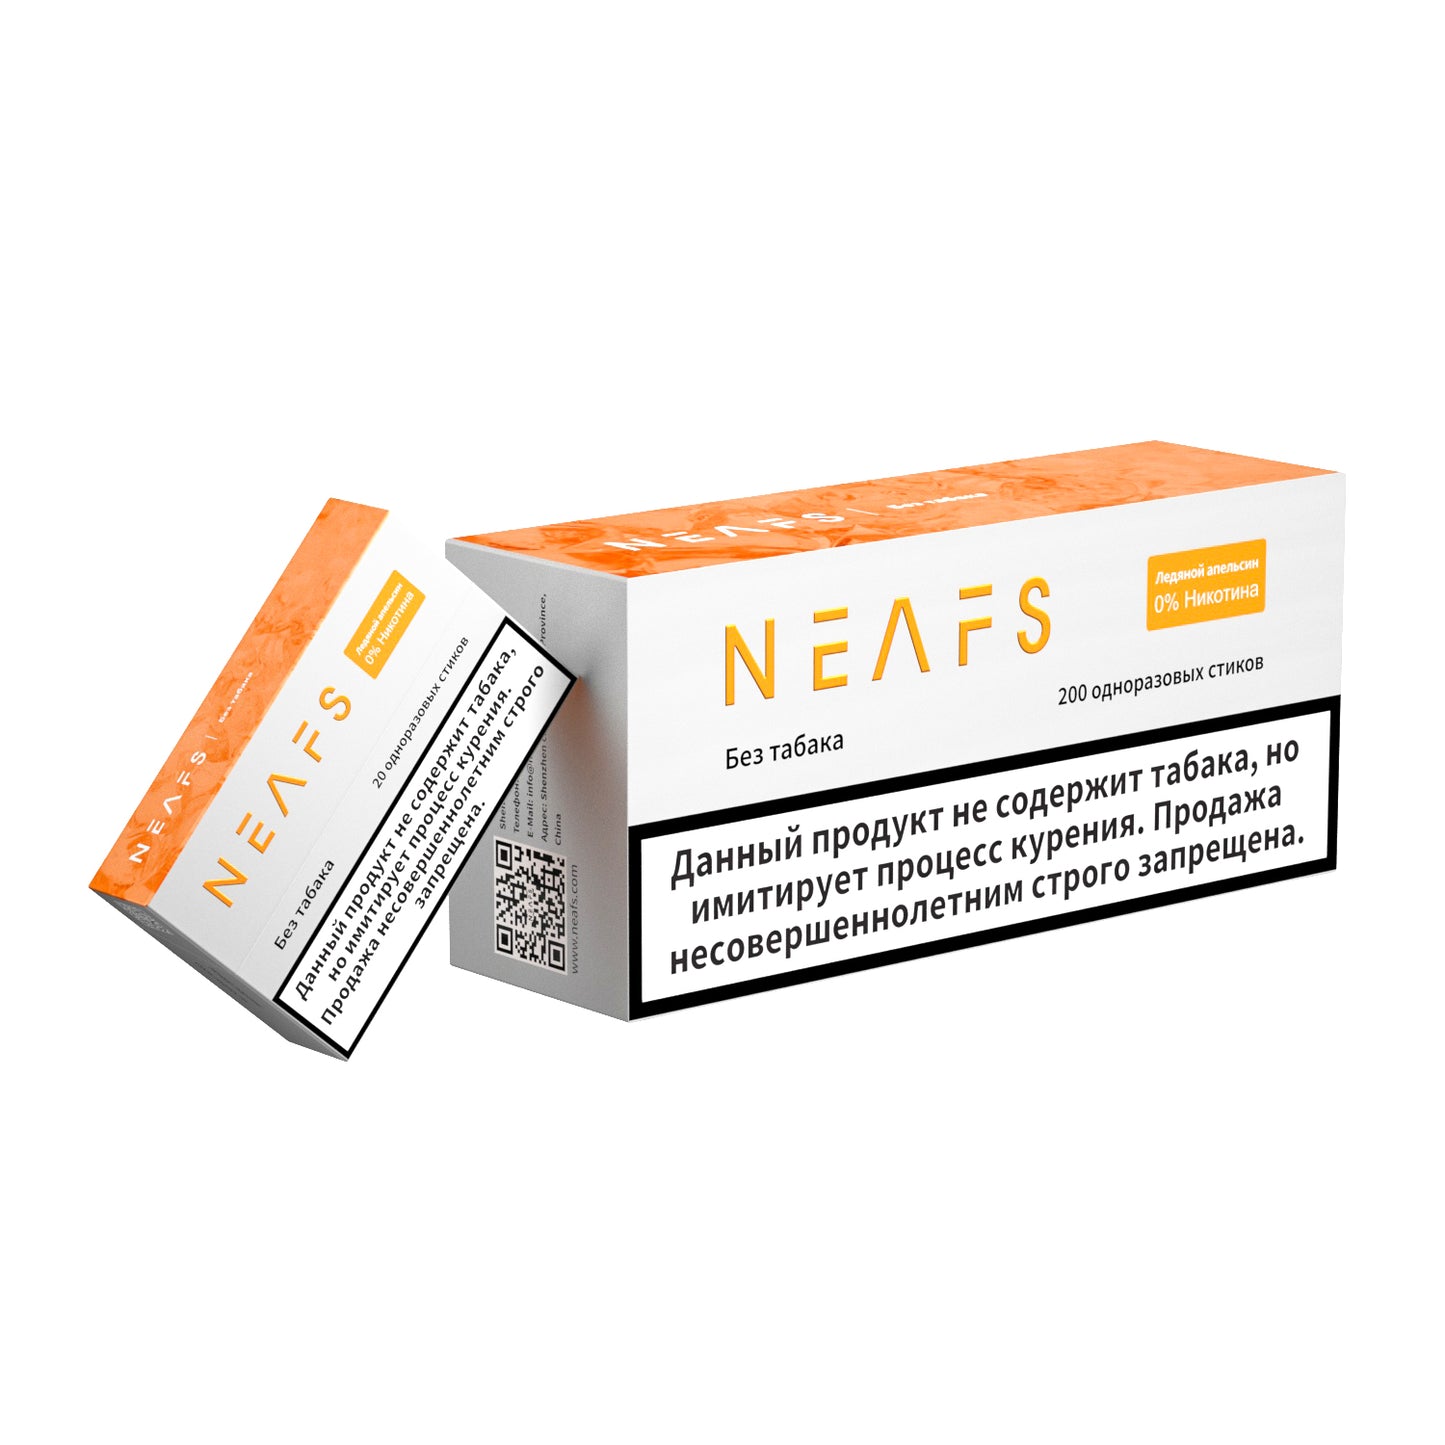 Безникотиновые стики NEAFS Ледяной апельсин 0% – 200 стиков